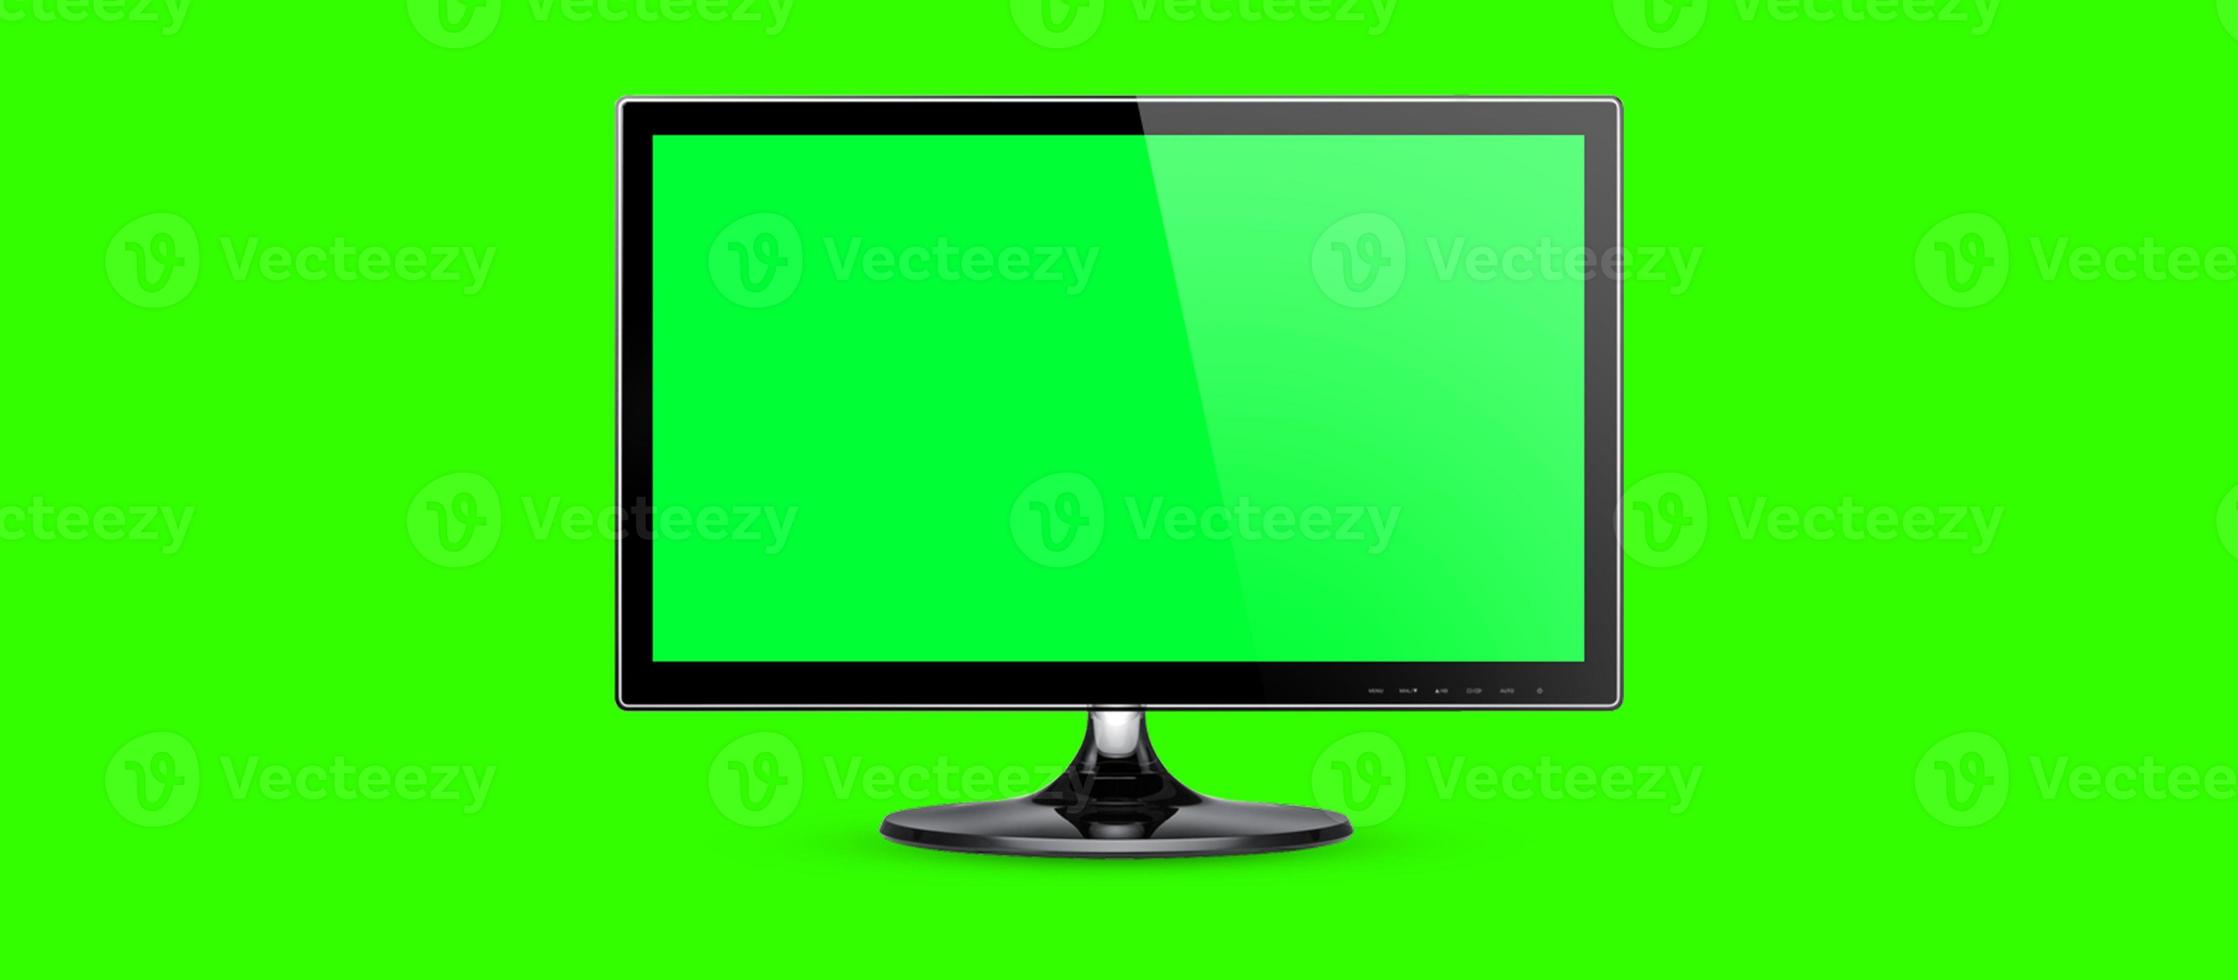 skrivbords- eller pc-mall för blank skärm. dator öppen vy, tom grön skärm på ljusgrön färgbakgrund, banner, kopieringsutrymme. 3d illustration. foto